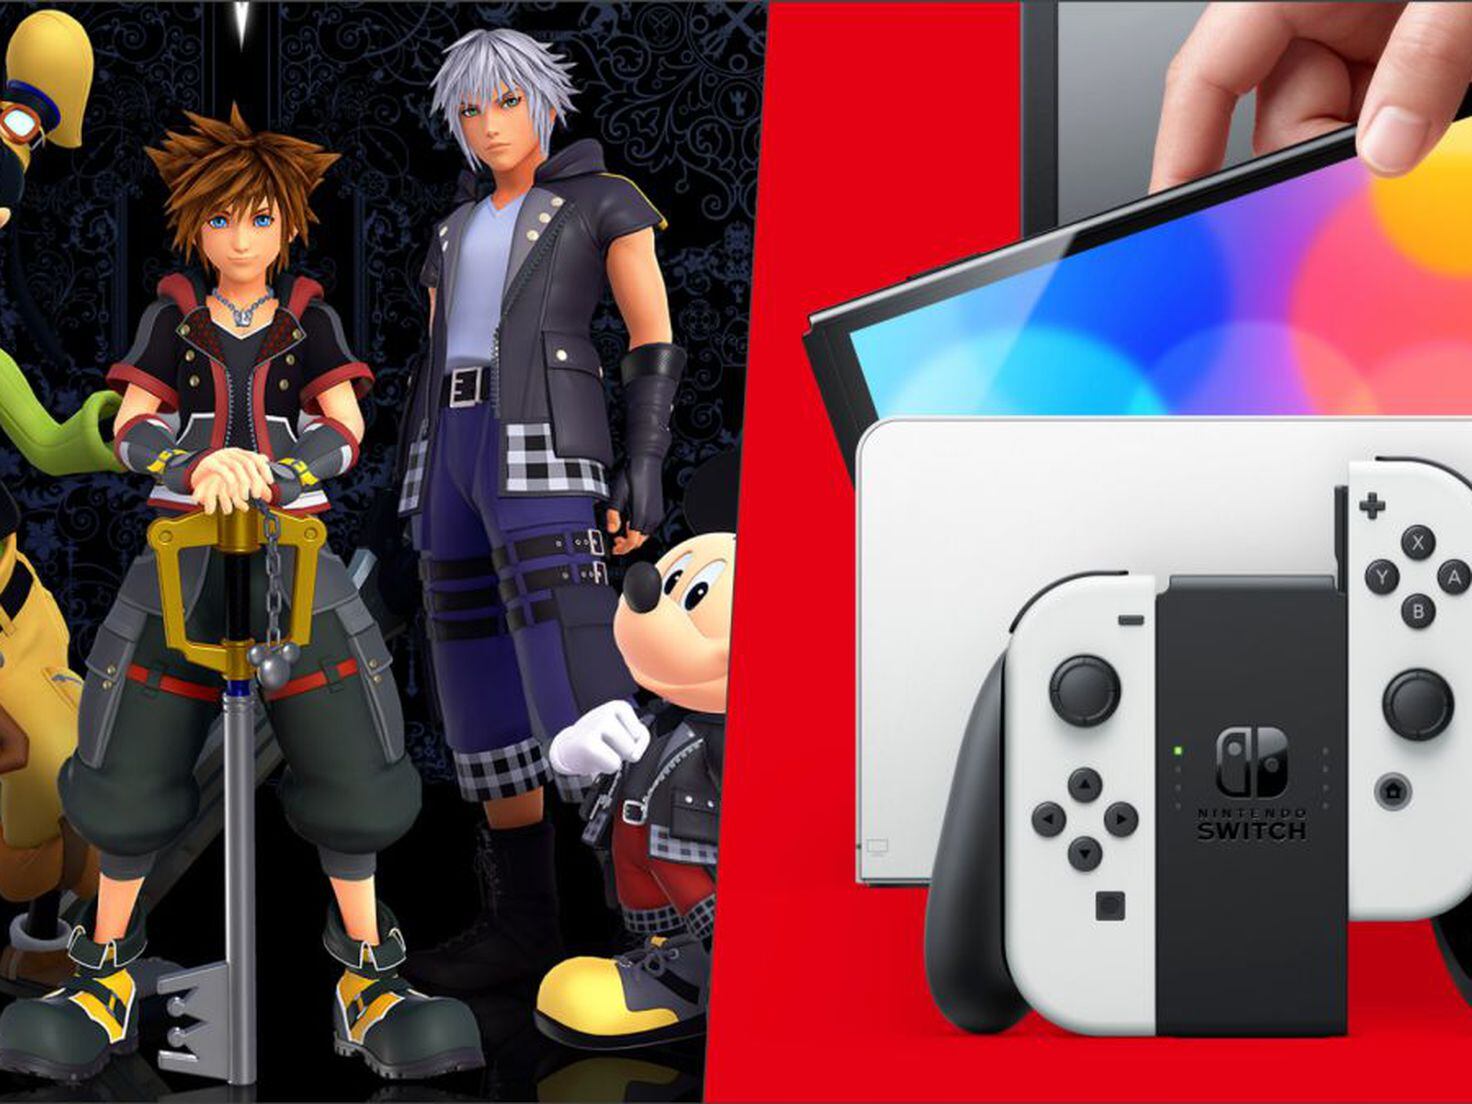 Kingdom Hearts: jogos da série via nuvem ganham data de lançamento no  Nintendo Switch - Nintendo Blast